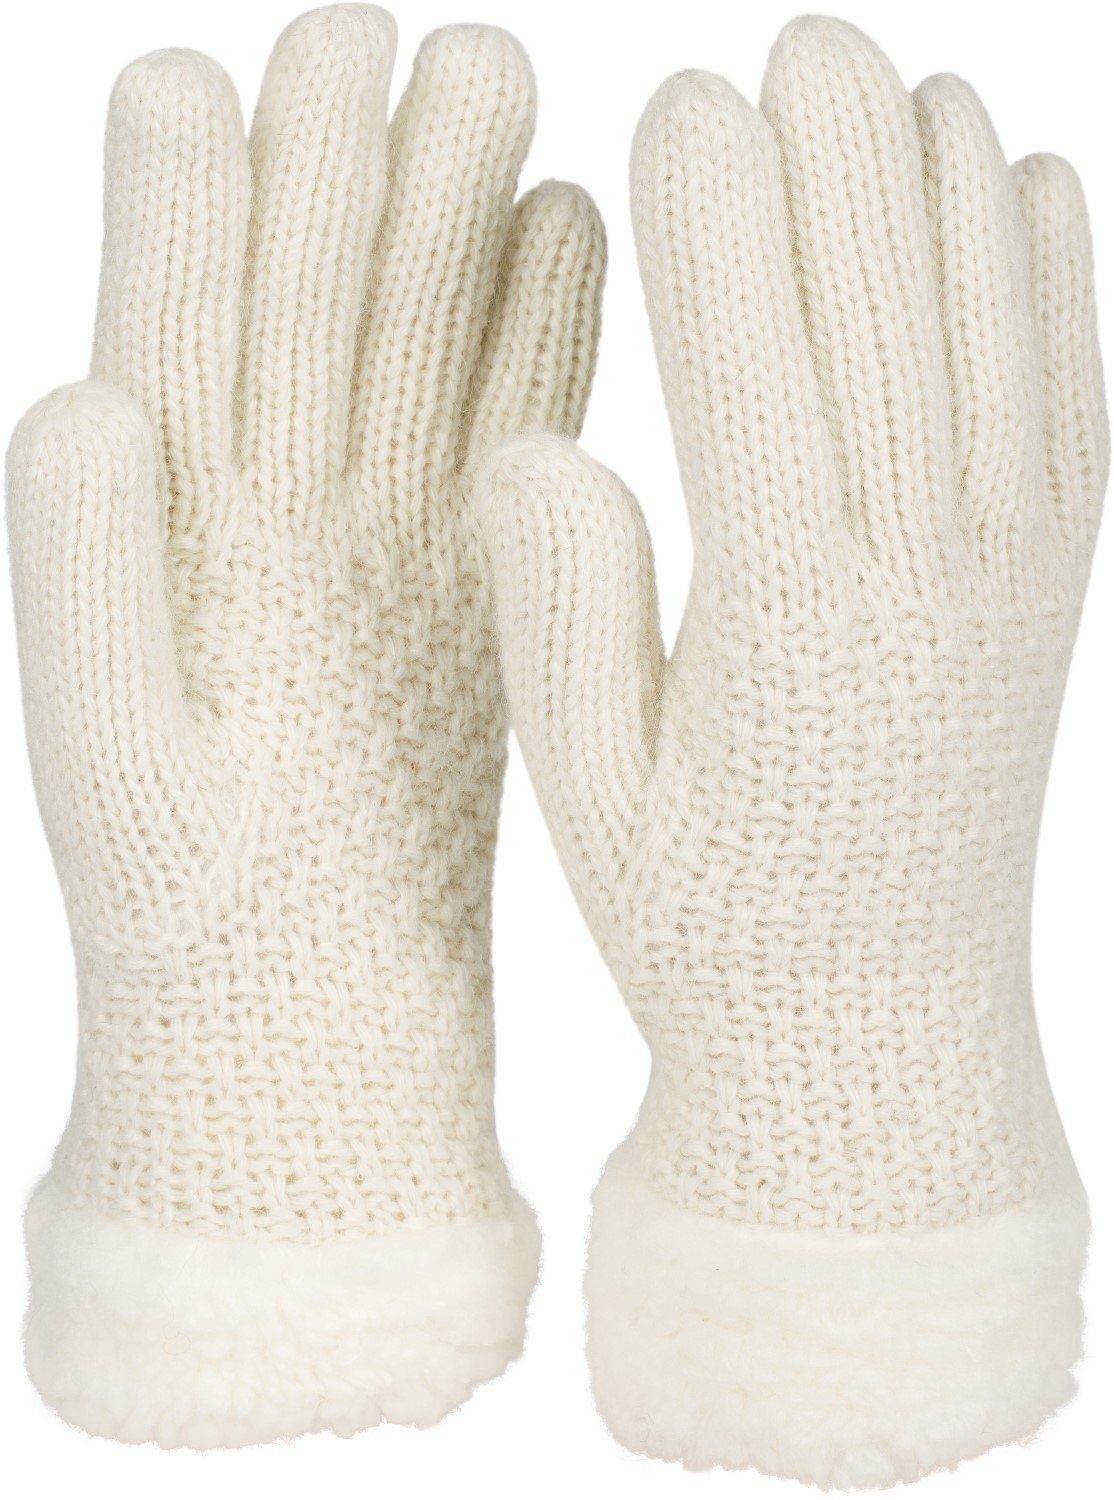 Perlmuster Fleece Strickhandschuhe mit styleBREAKER Creme-Weiß und Strickhandschuhe